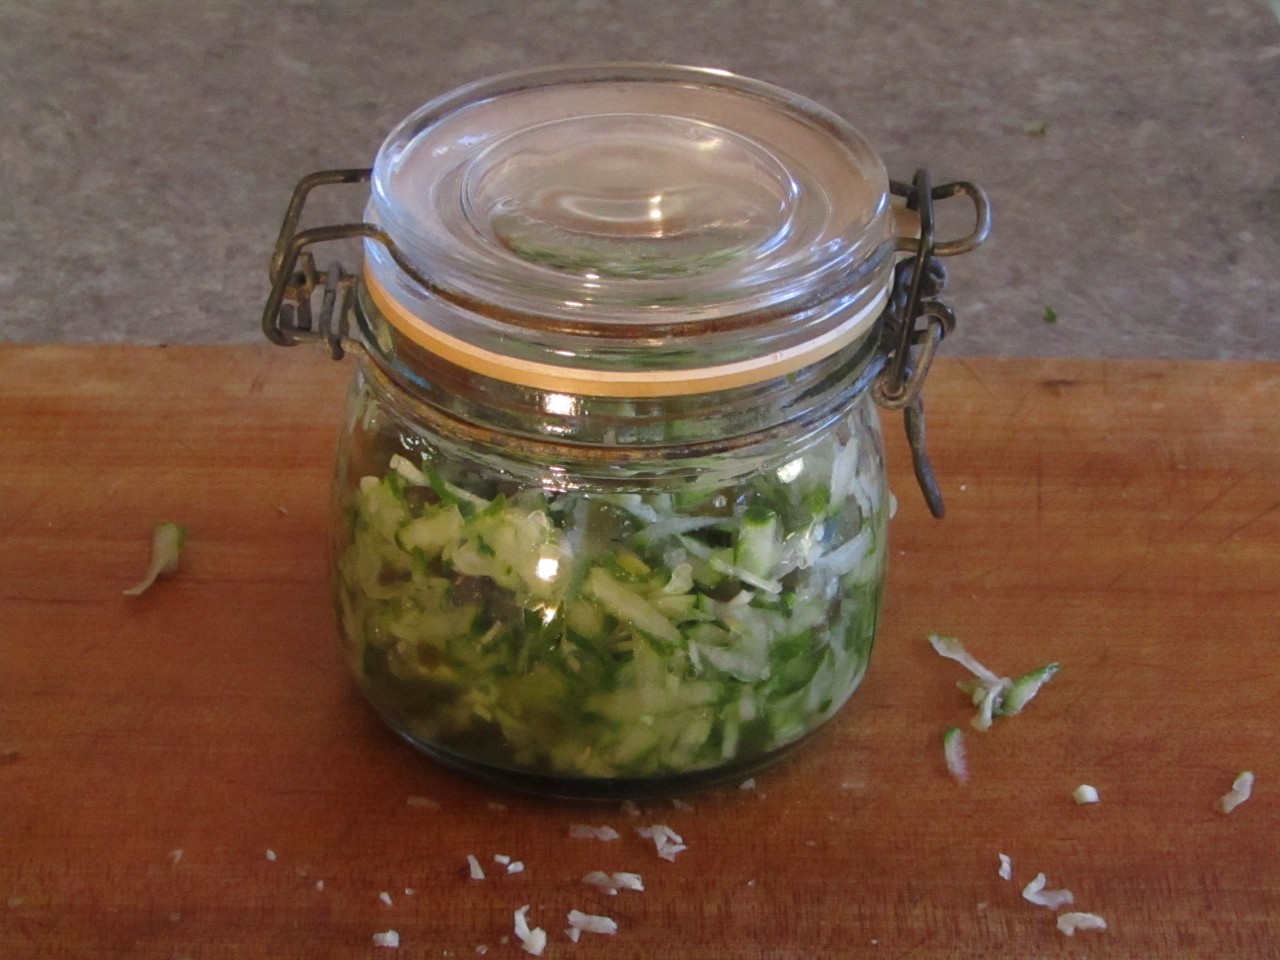 Hot pepper relish in a flip top jar